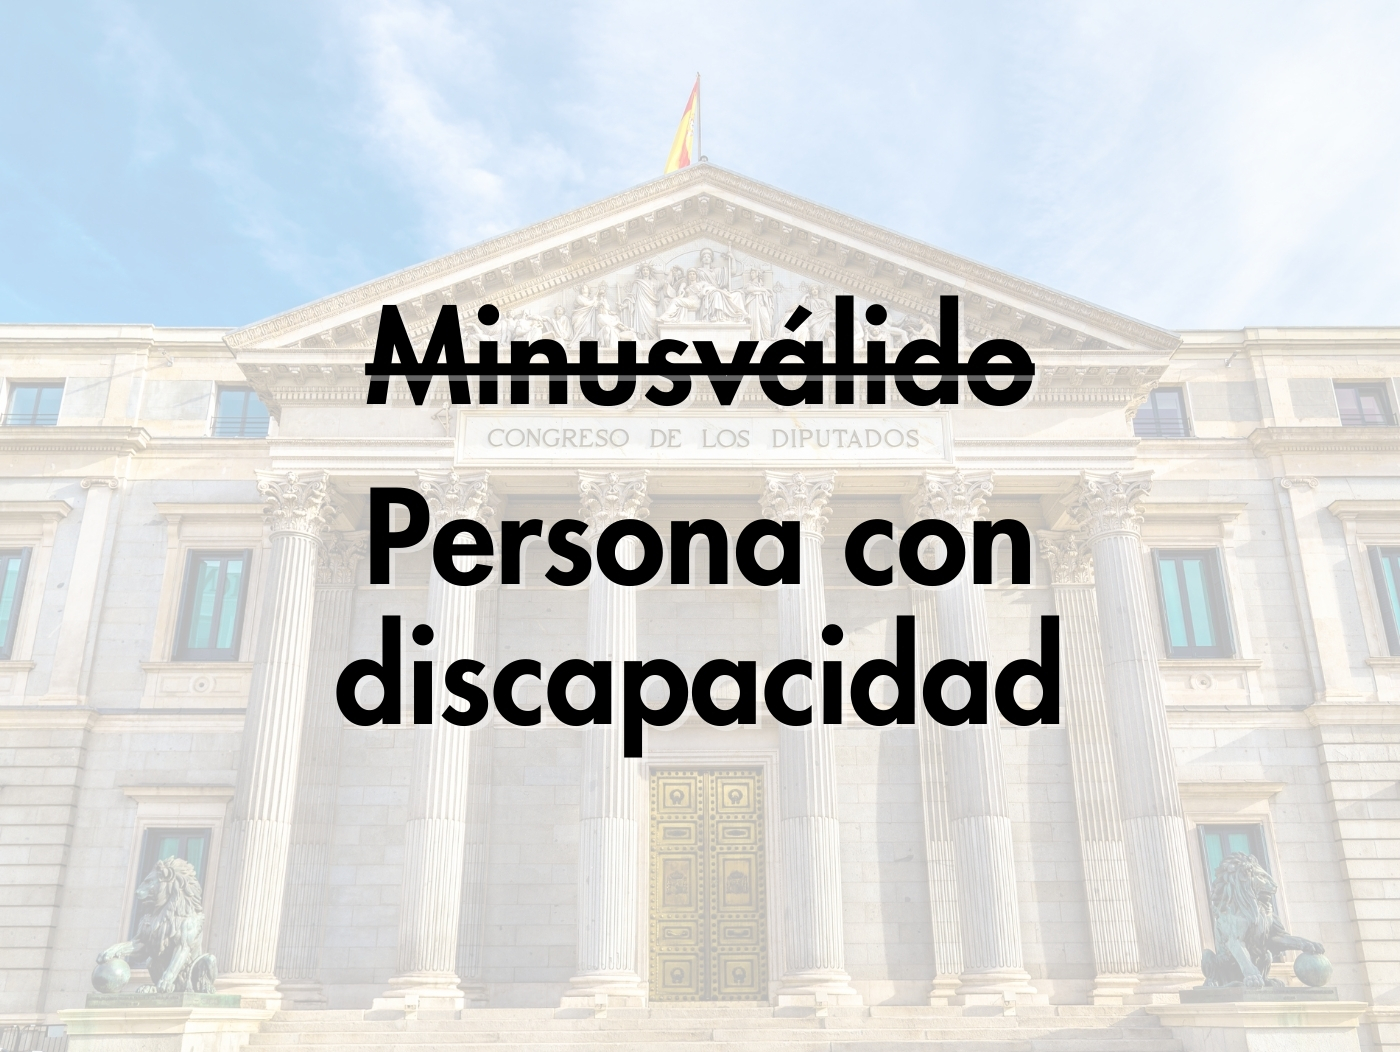 Discapacidad Minusvalido cambio Constitución Española 